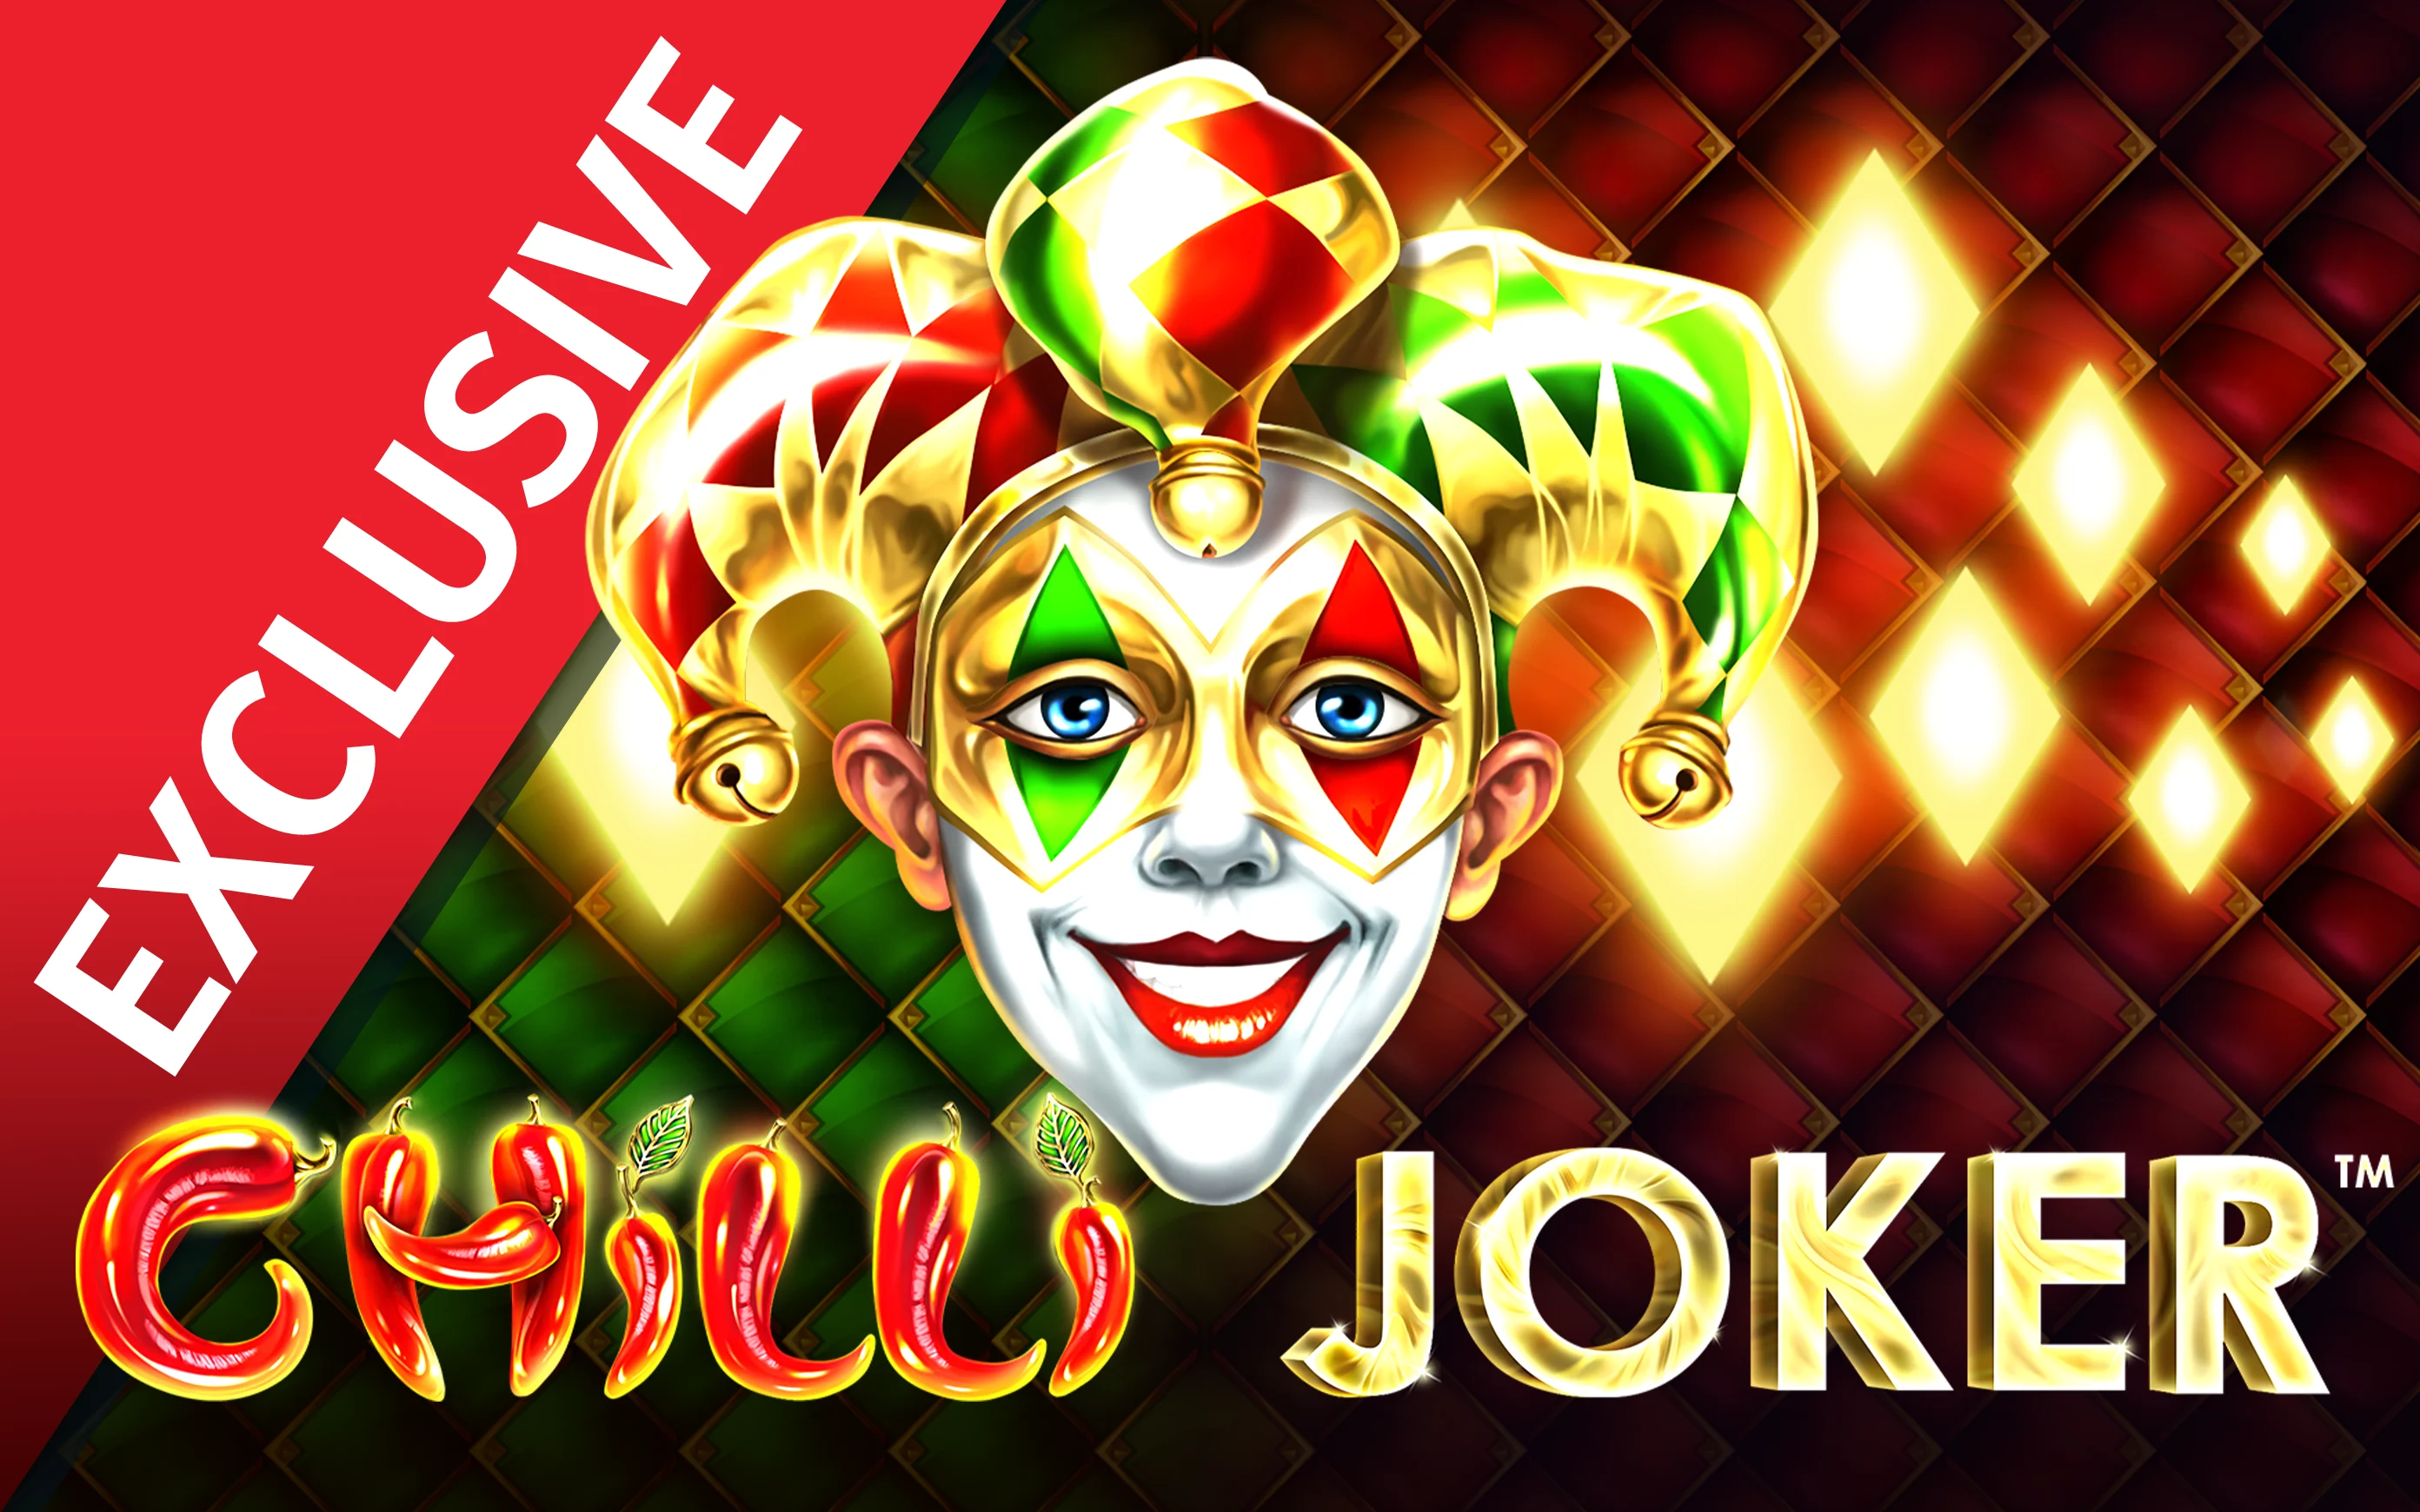 Play Chilli Joker on Starcasino.be online casino